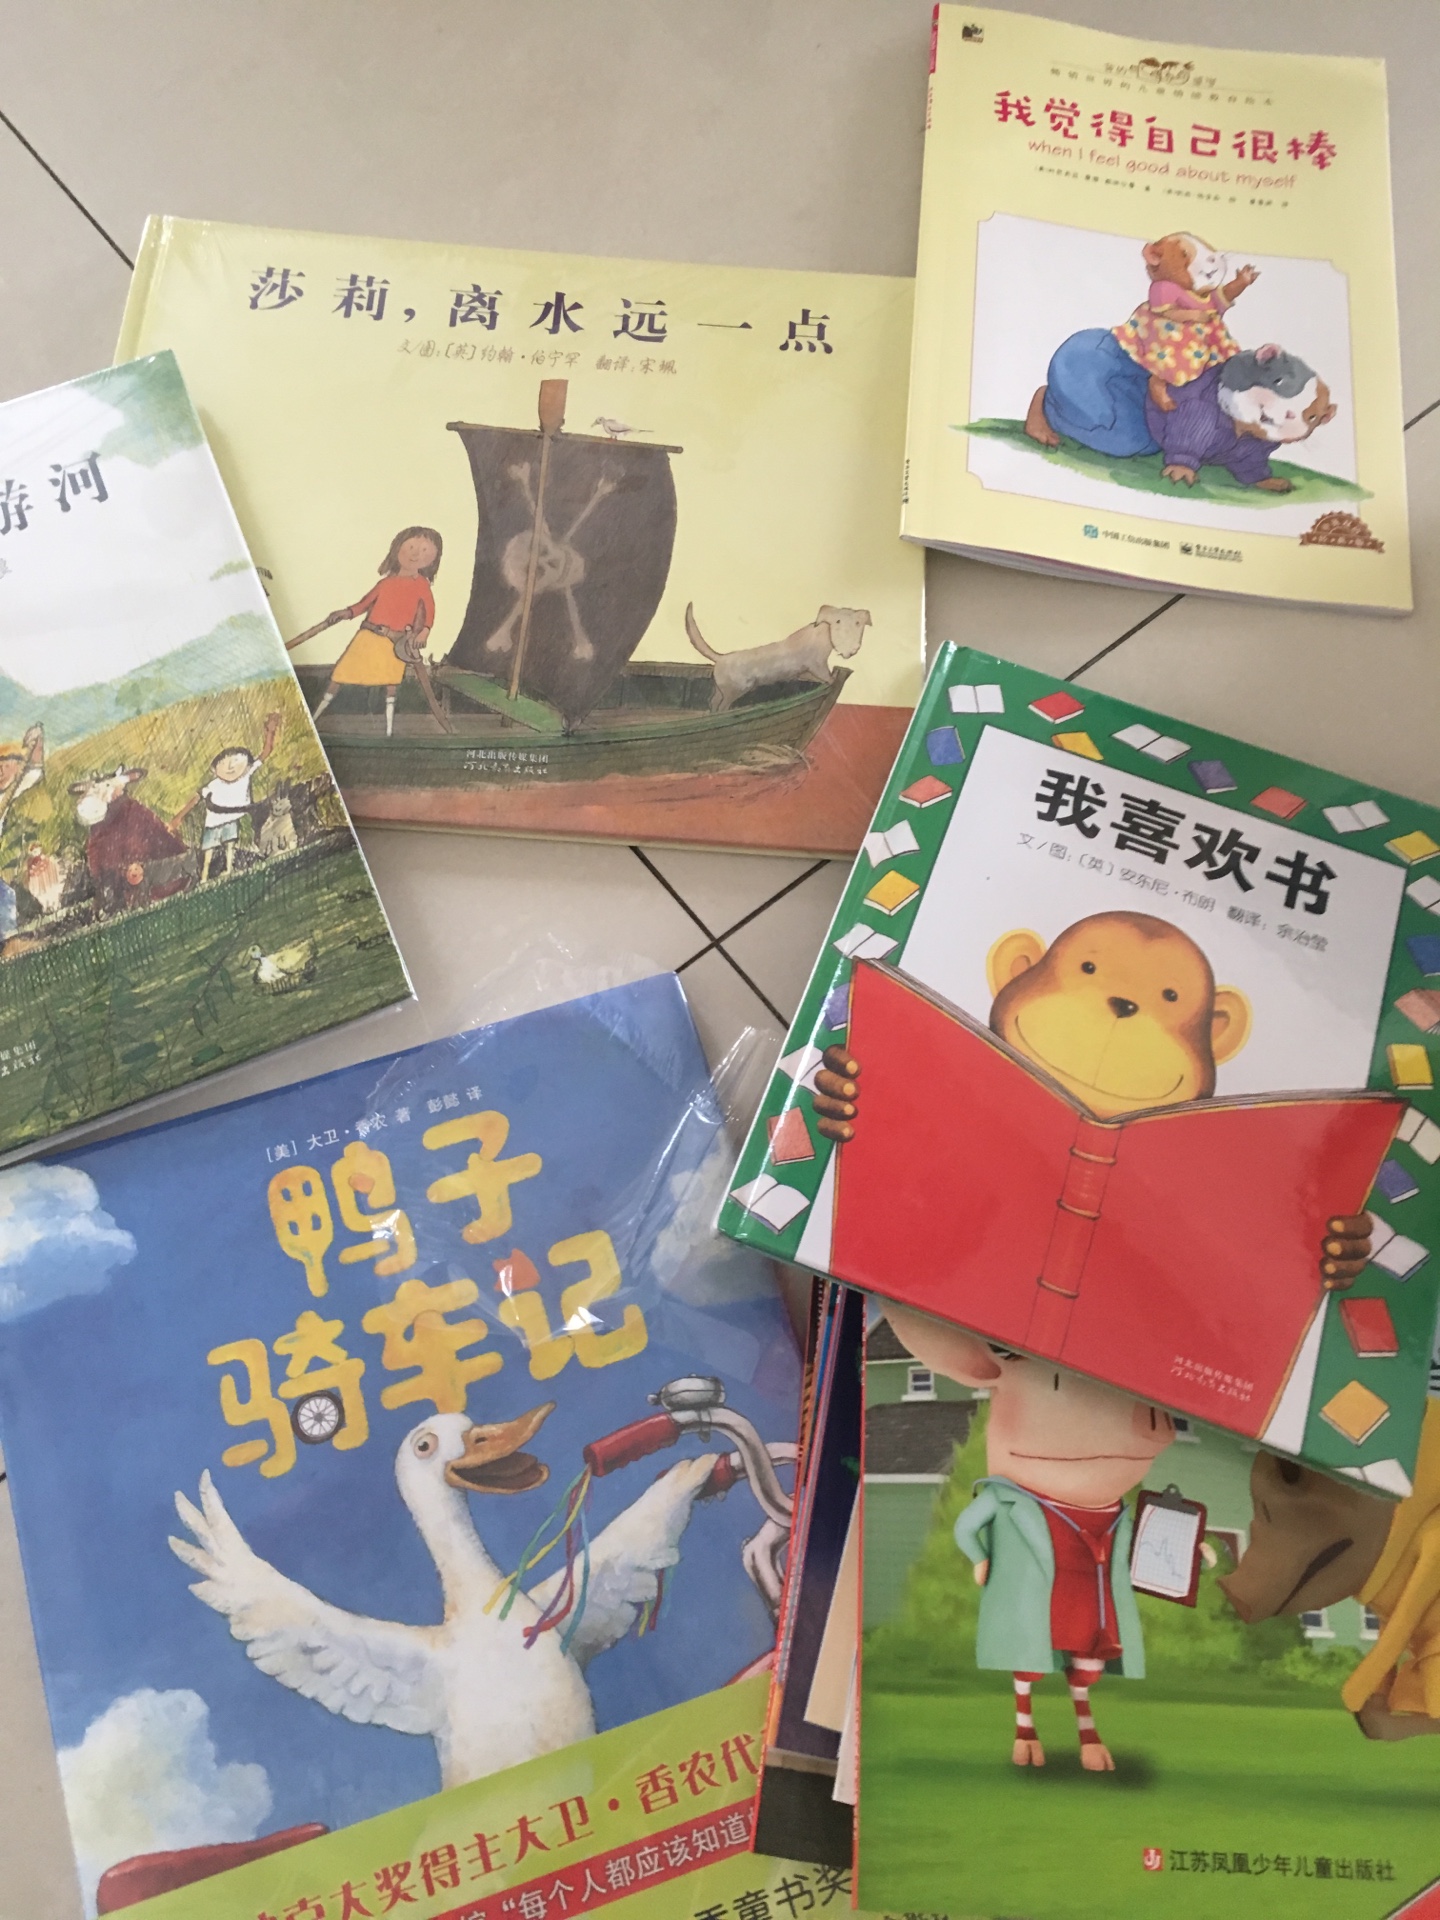 中英文双语的、情绪管理书、是成套的、只入了一本、凑单的！！快递一如既往的好、书的质量也好！都有塑封！